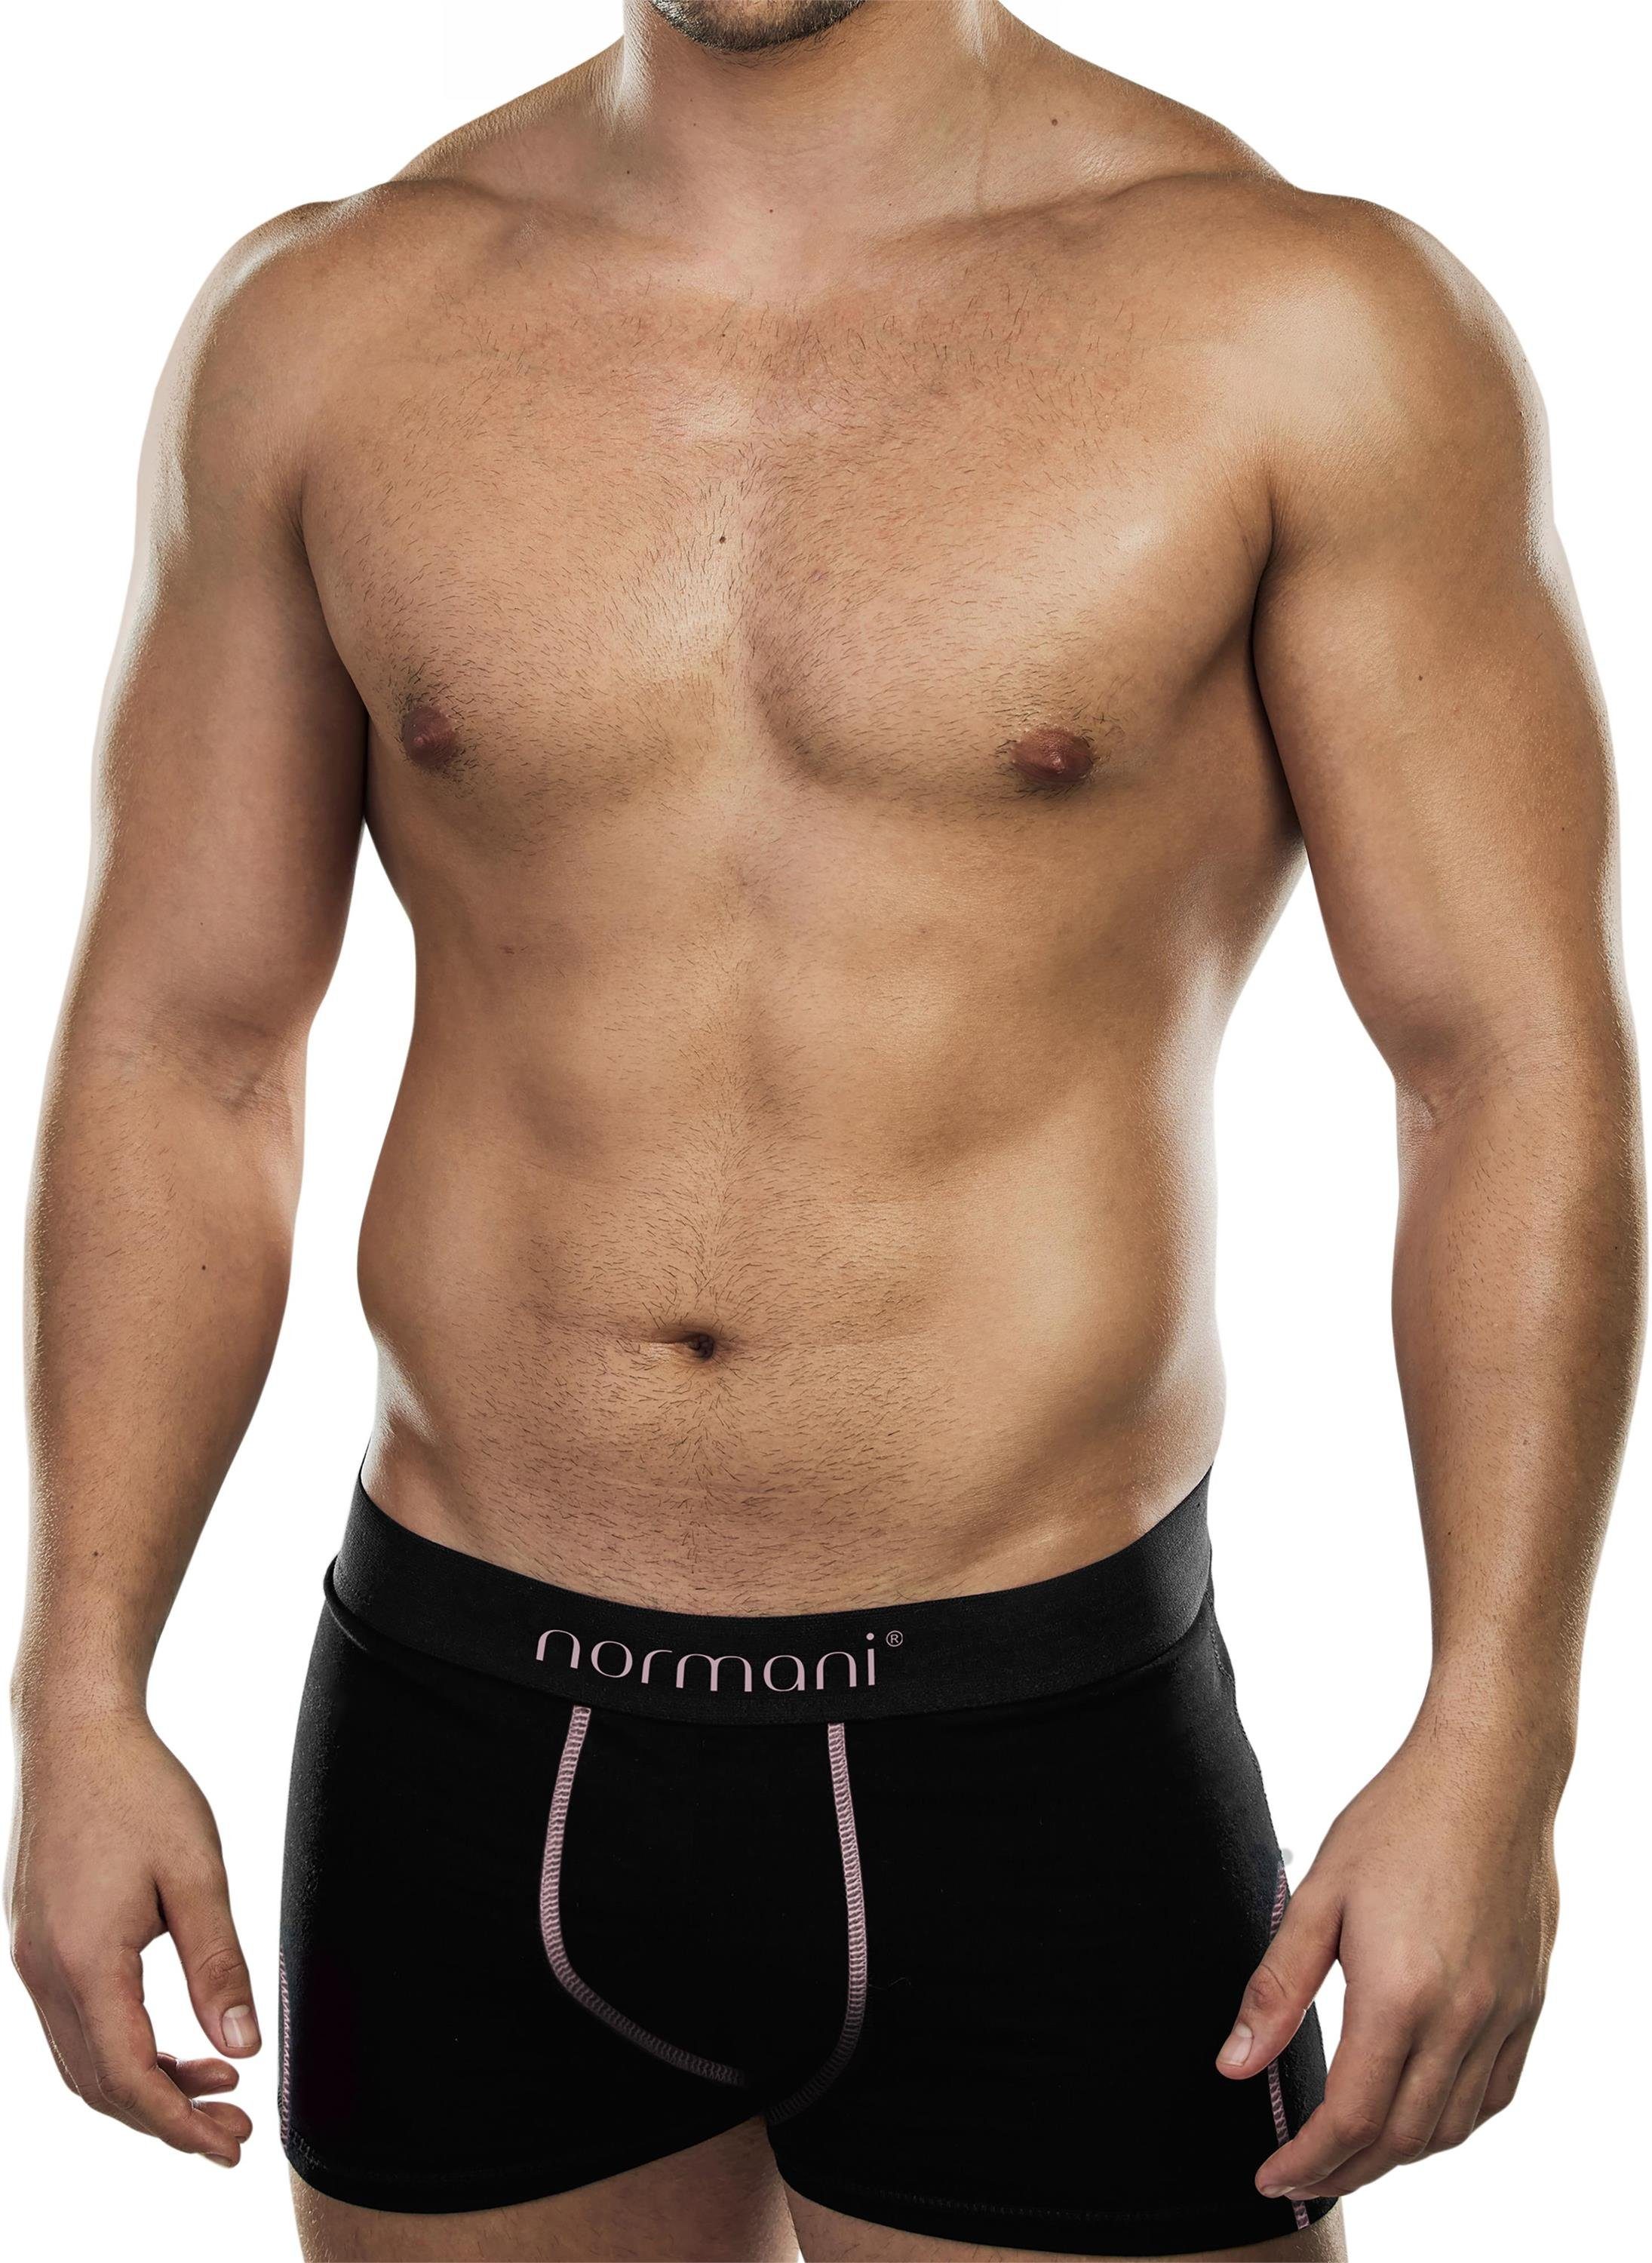 normani Boxershorts 6 Baumwolle Boxershorts aus atmungsaktiver Baumwolle Lachs für Unterhose aus Männer weiche